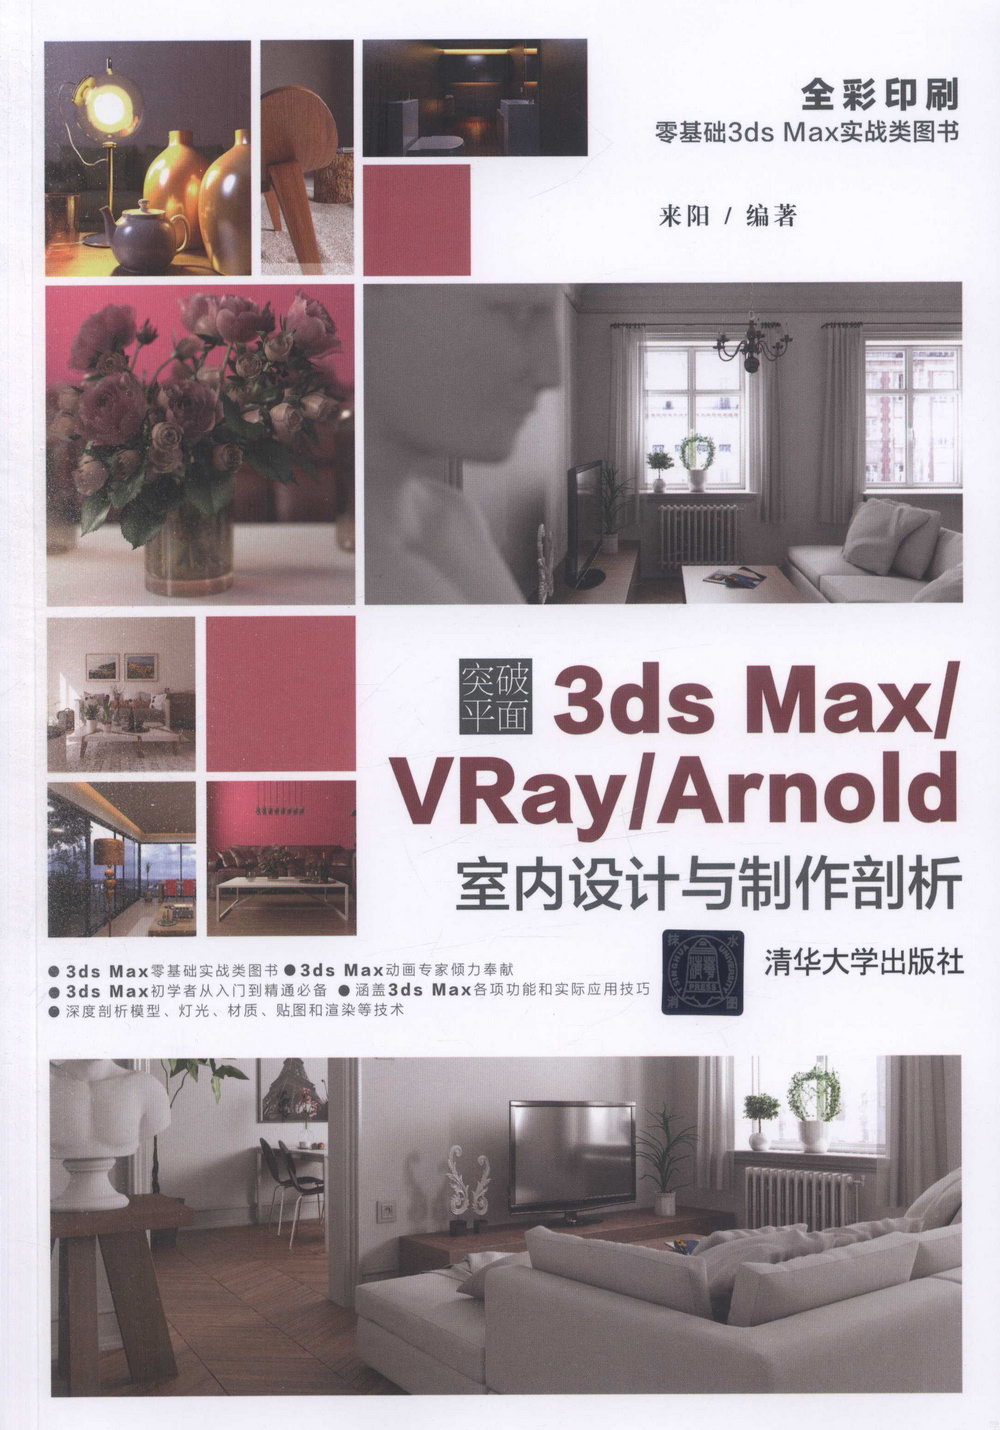 突破平面3ds Max/VRay/Arnold室內設計與製作剖析